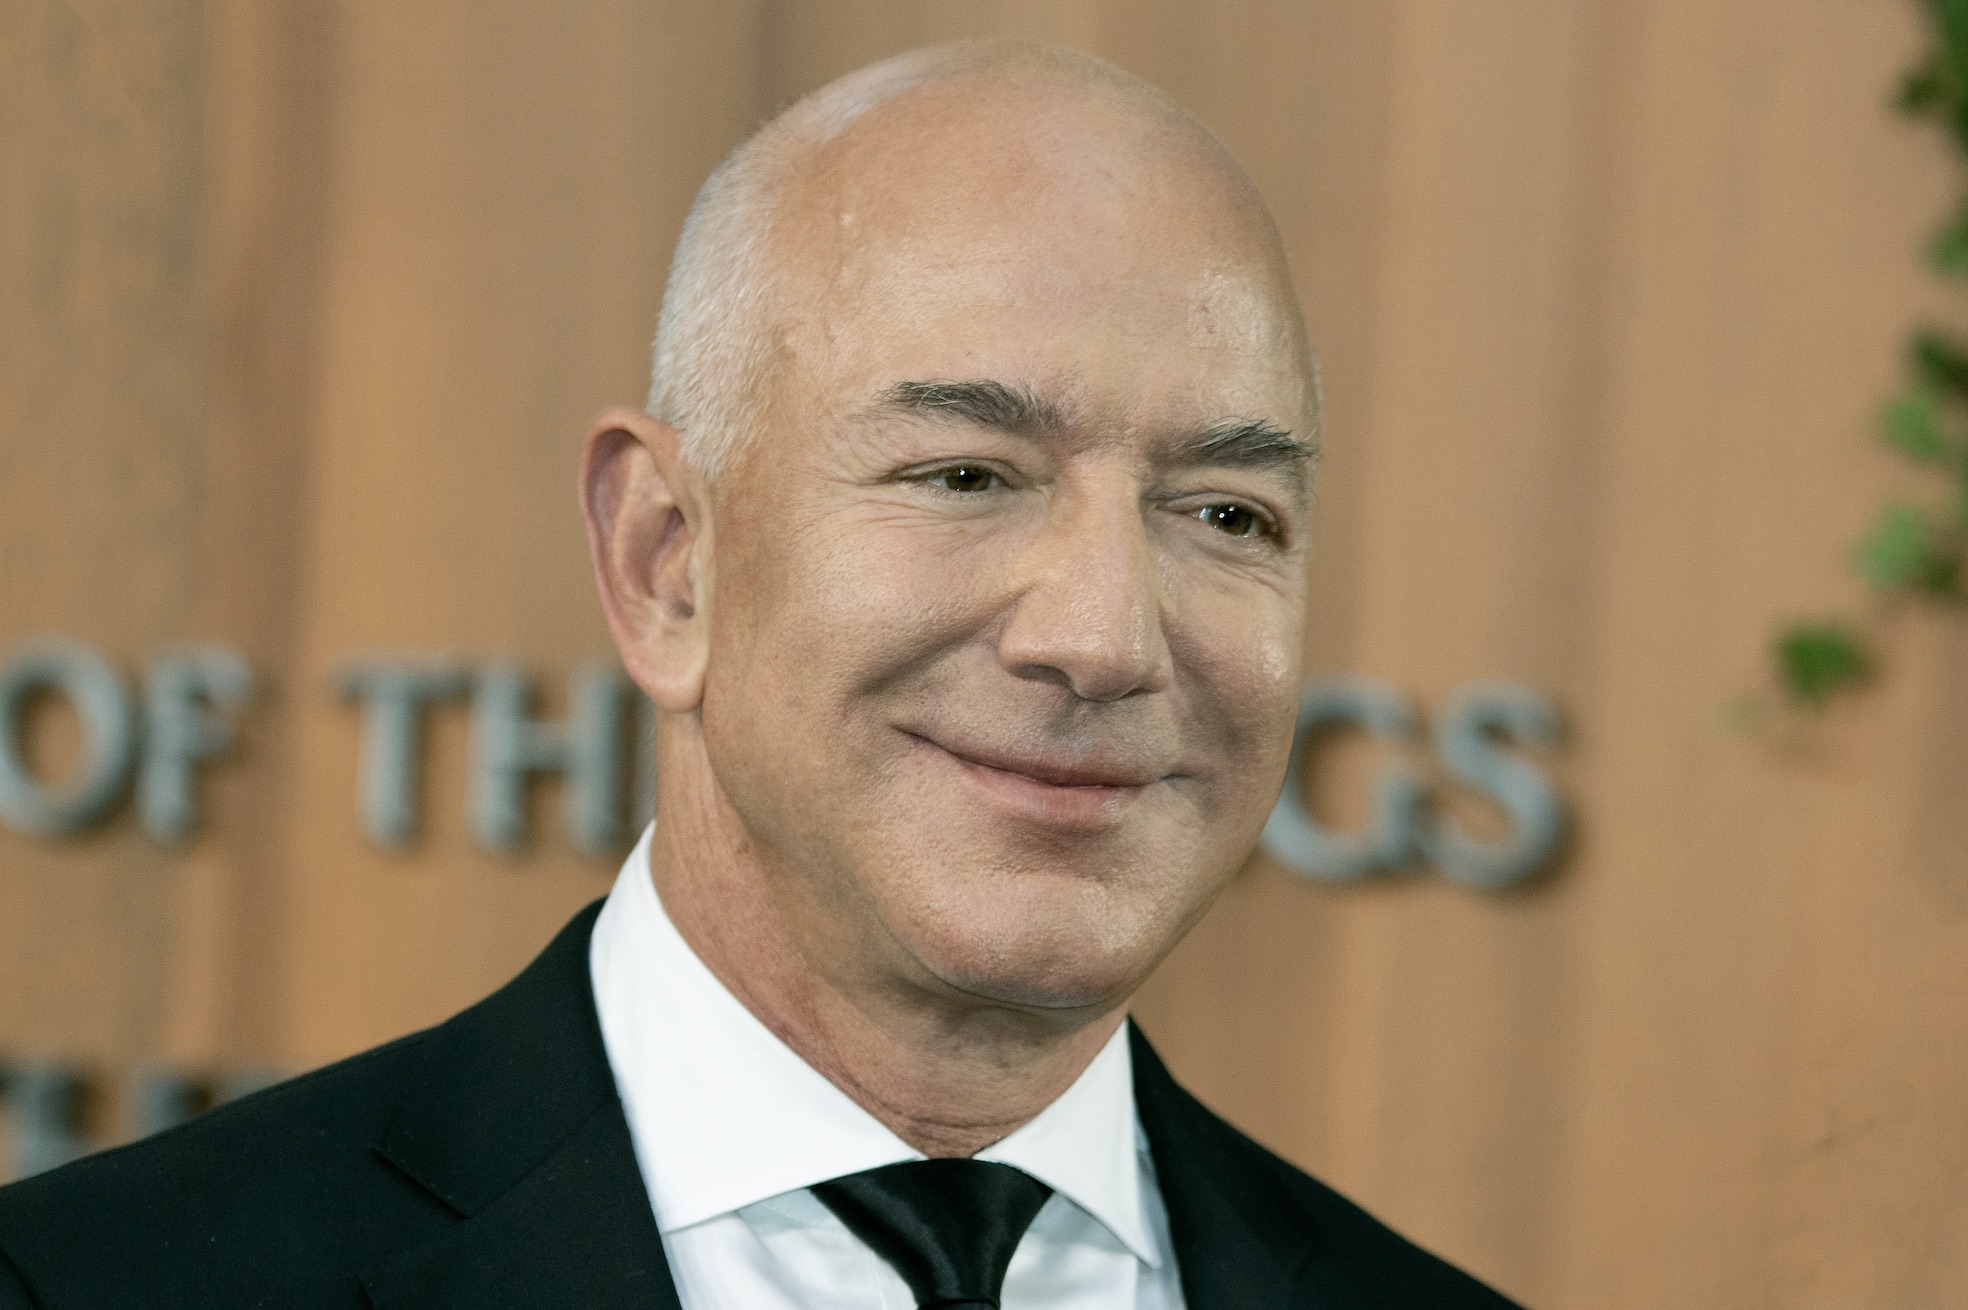 El hijo de Jeff Bezos le dijo que no "echara a perder" 'El Señor de los Anillos: Los Anillos del Poder'